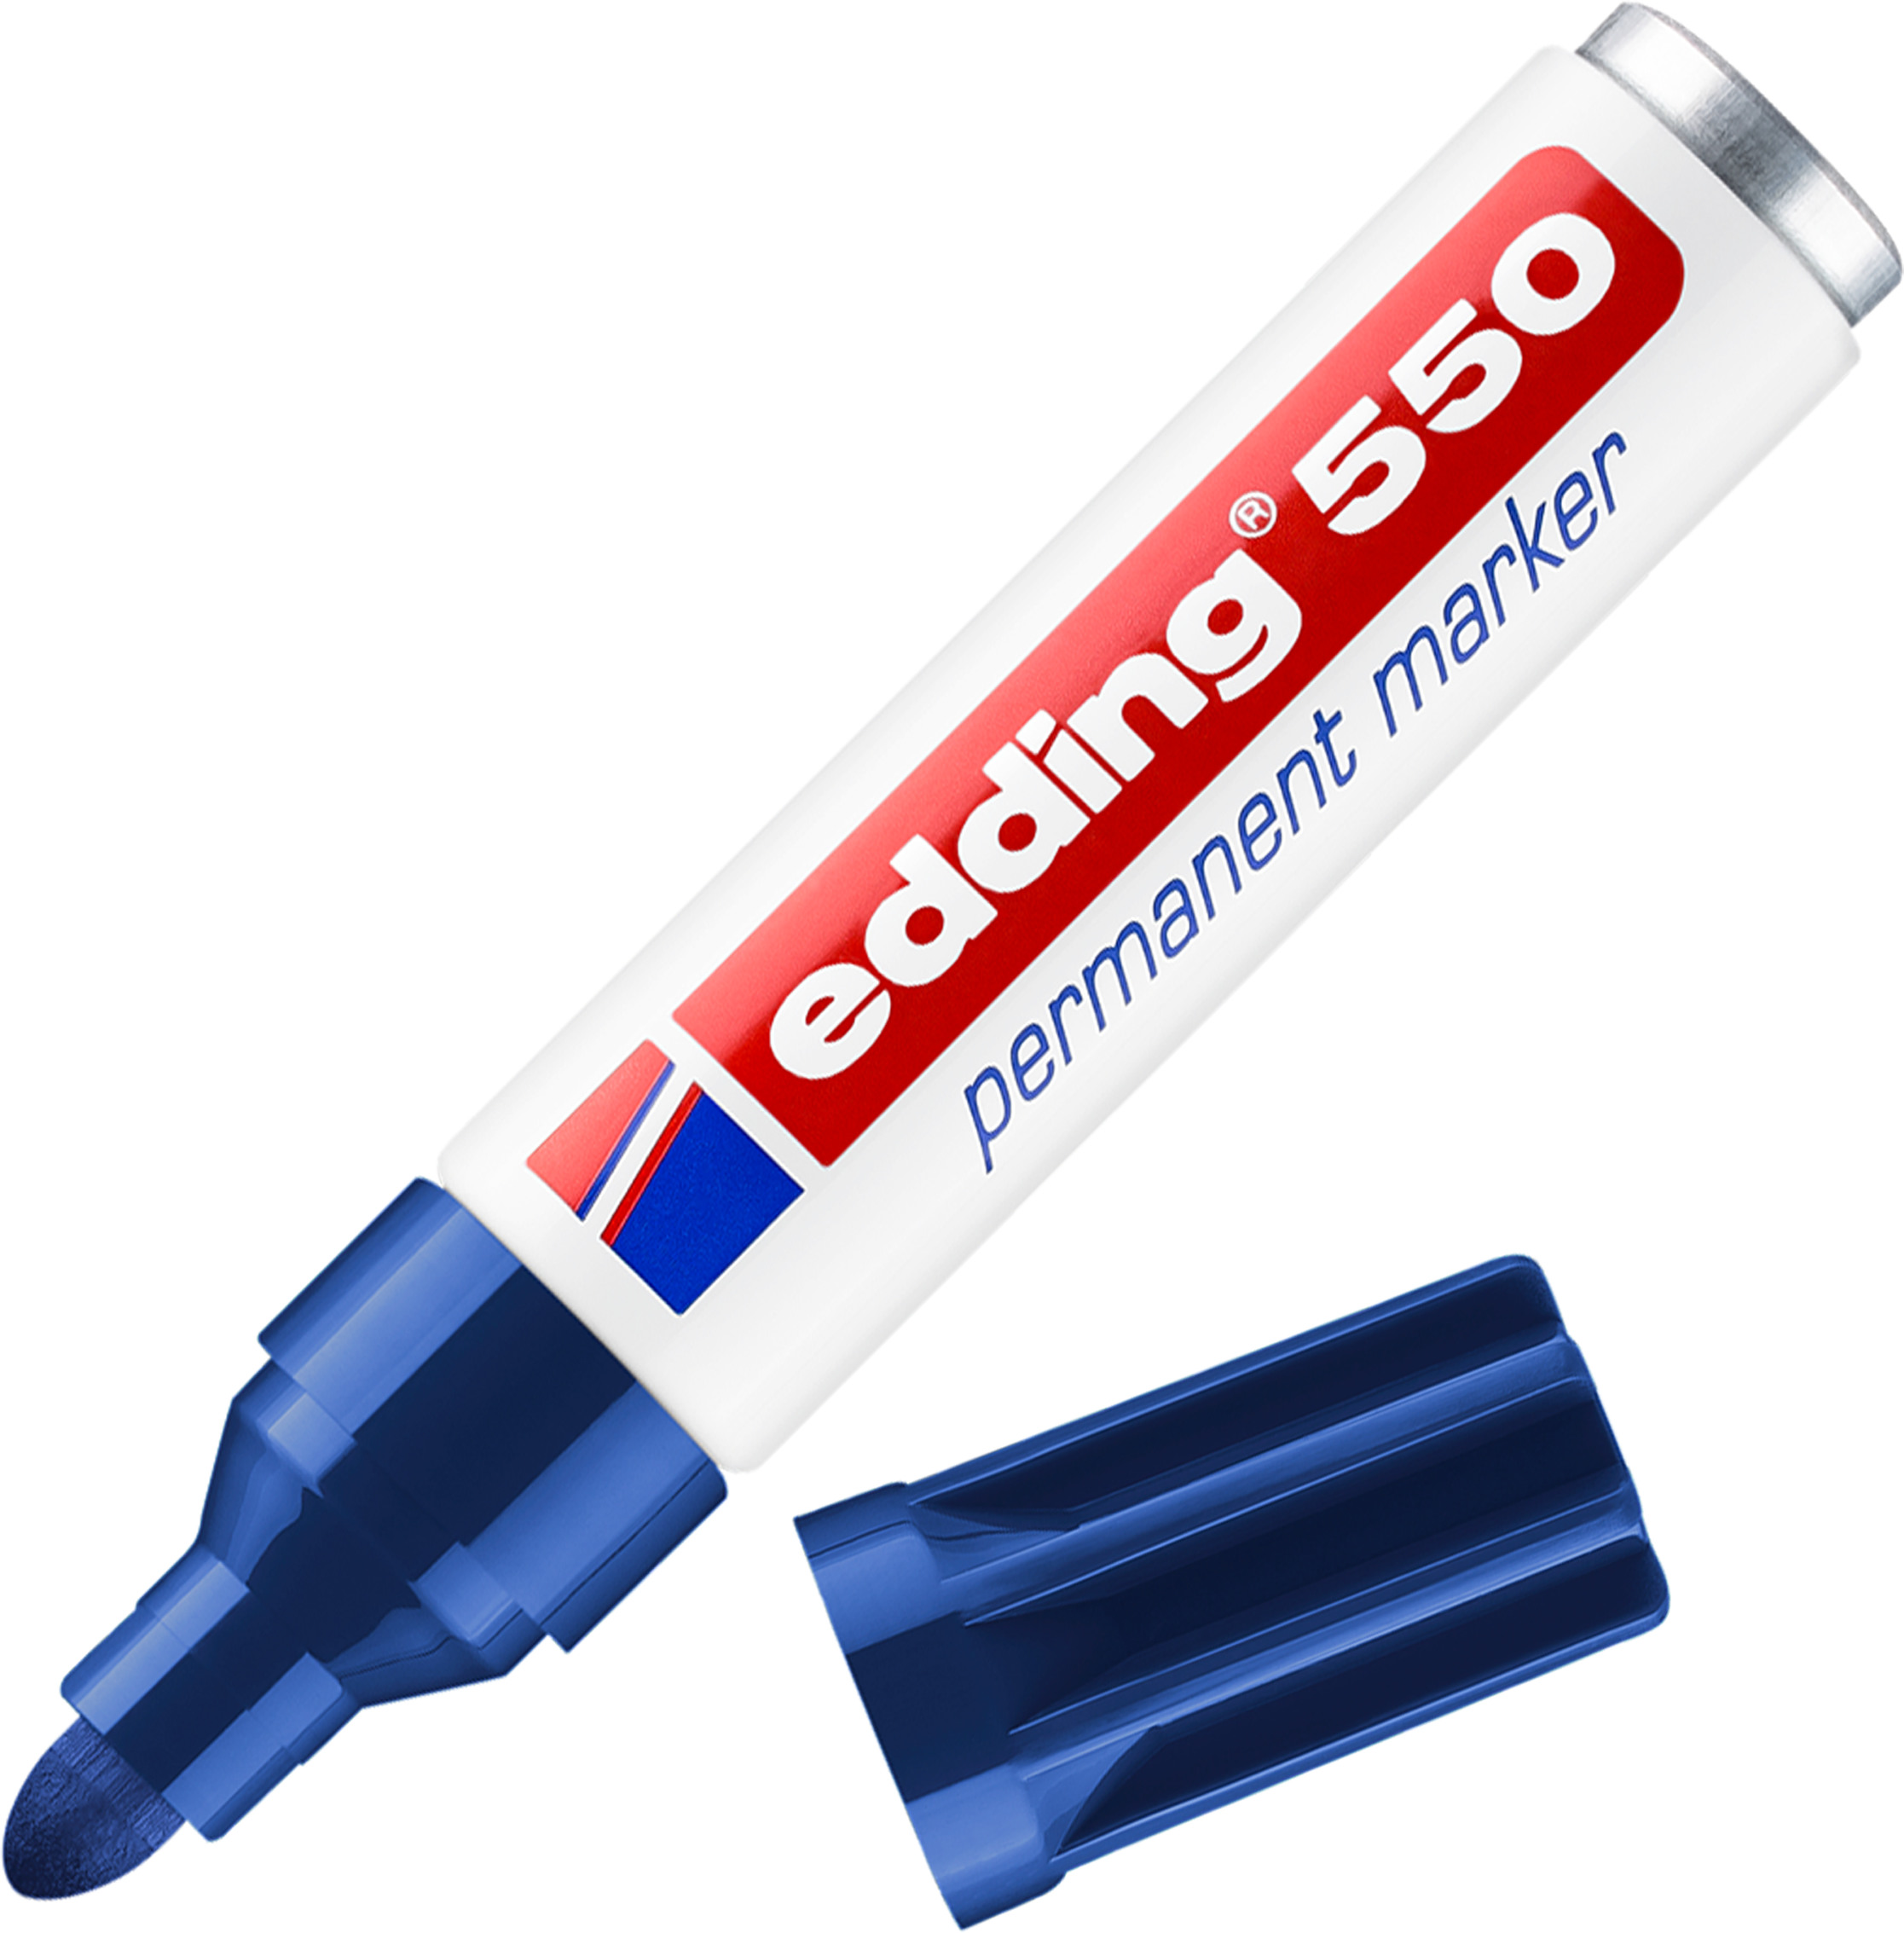 EDDING Marqueur permanent 550 3-4mm 550-3 bleu